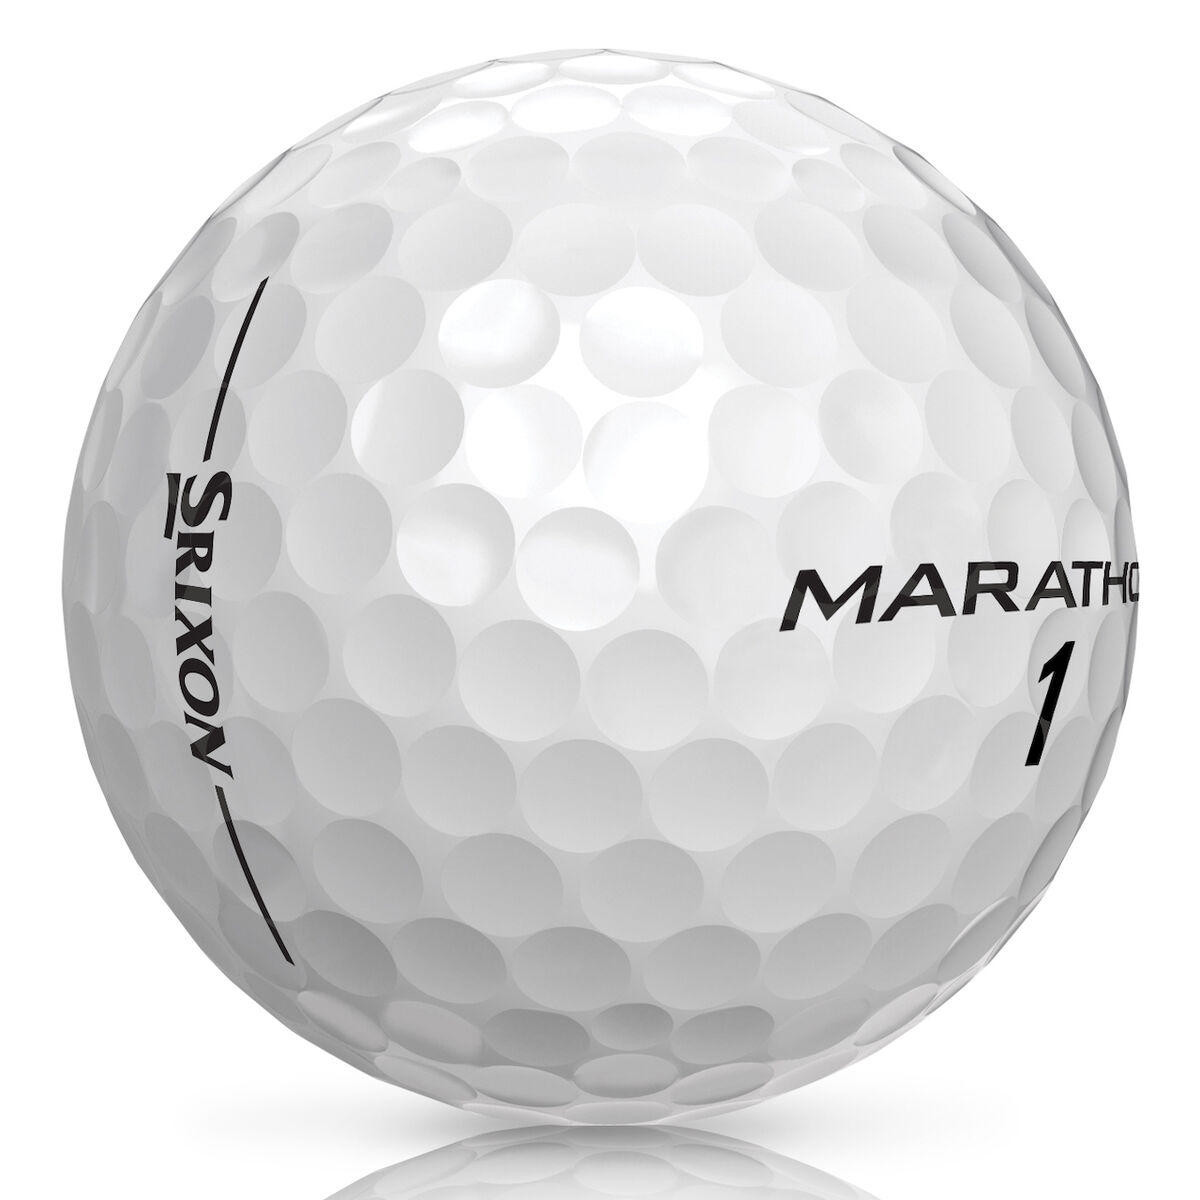 Srixon Marathon golf ball